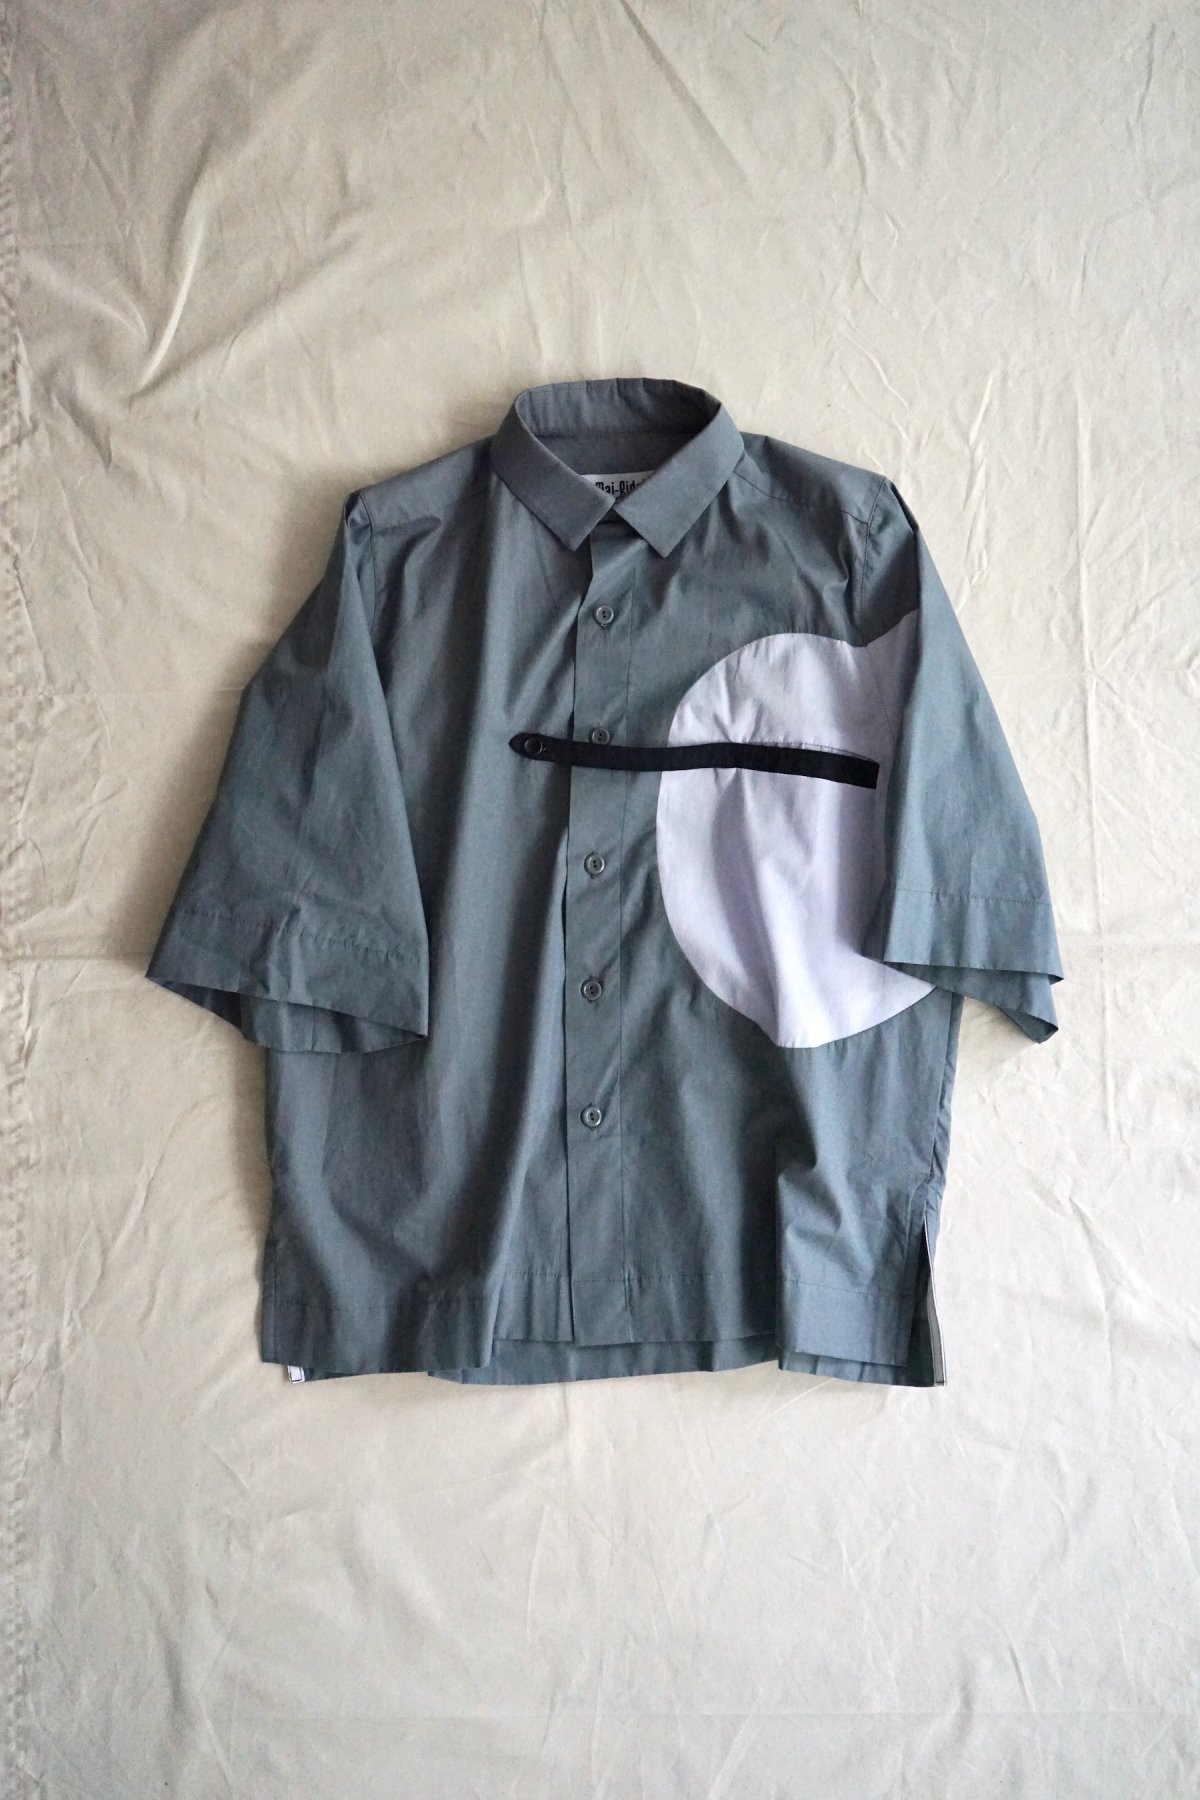 MAI GIDAH / Shortsleeved Shirt with felt-pocket and belt / Grey,white,navy